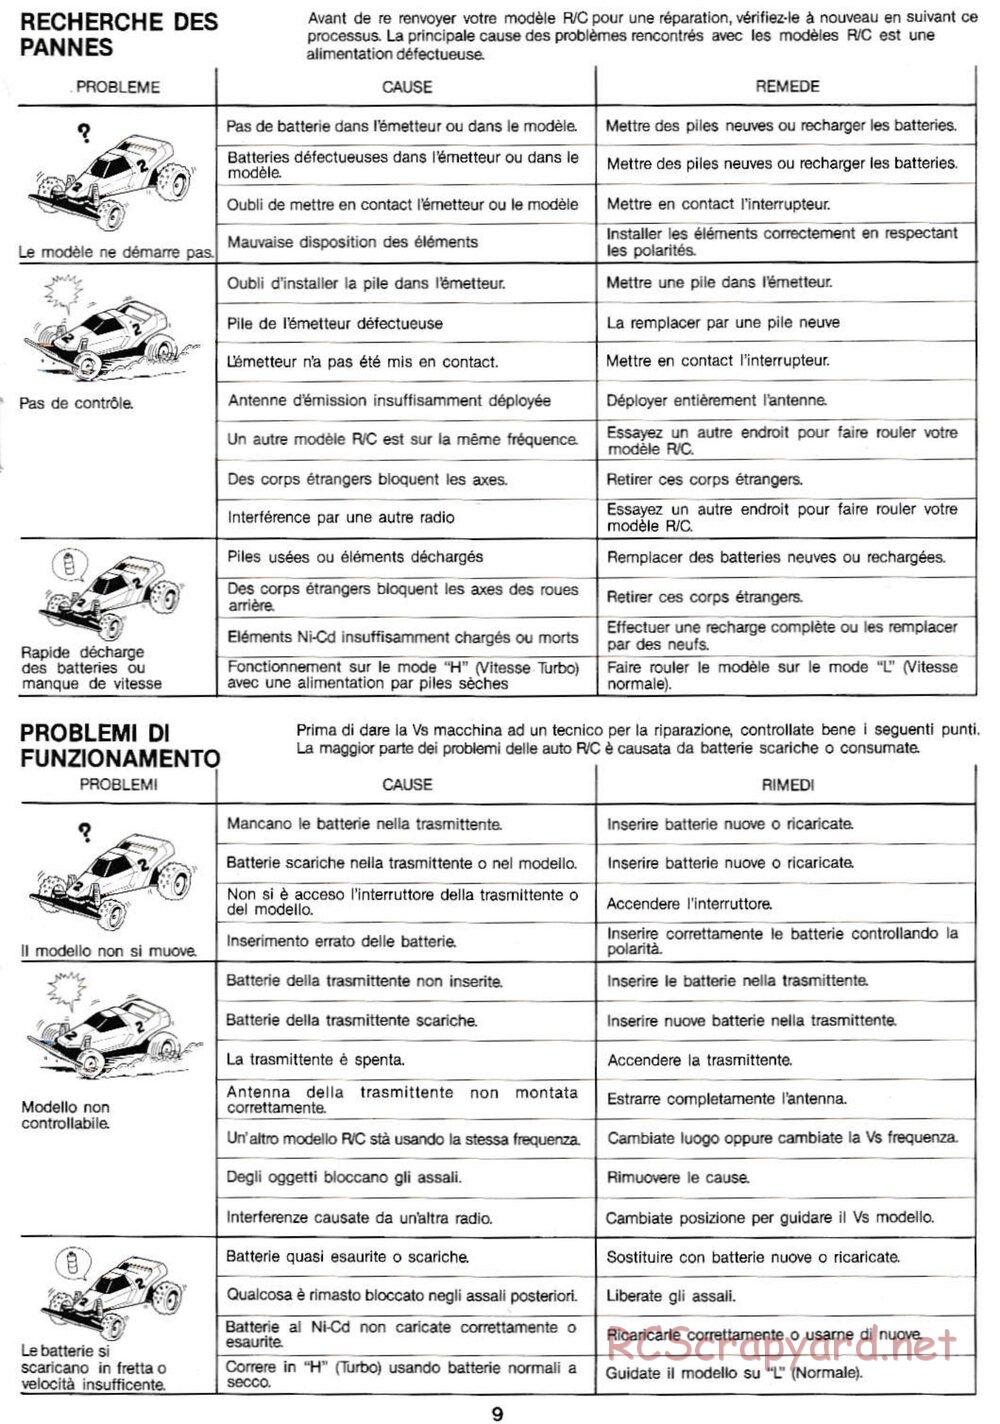 Tamiya - Super Sabre QD Chassis - Manual - Page 9